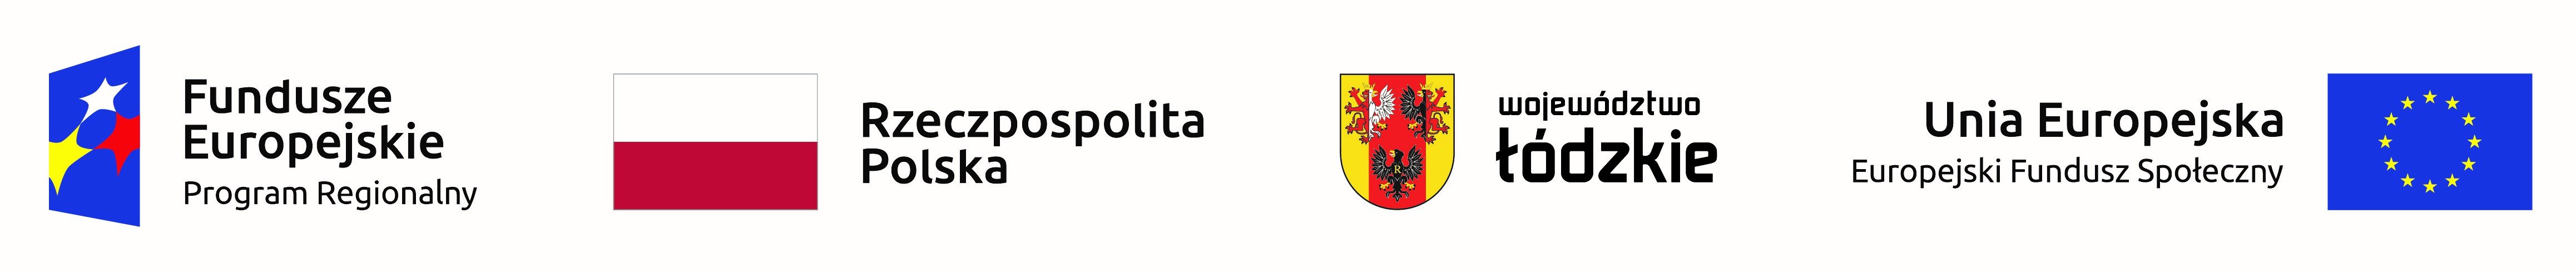 Logotypy następujących instytucji: Fundusze Europejskie - Program Regionalny, Rzeczpospolita Polska, Województwo łódzkie, Unia Europejska - Europejski Fundusz Społeczny 